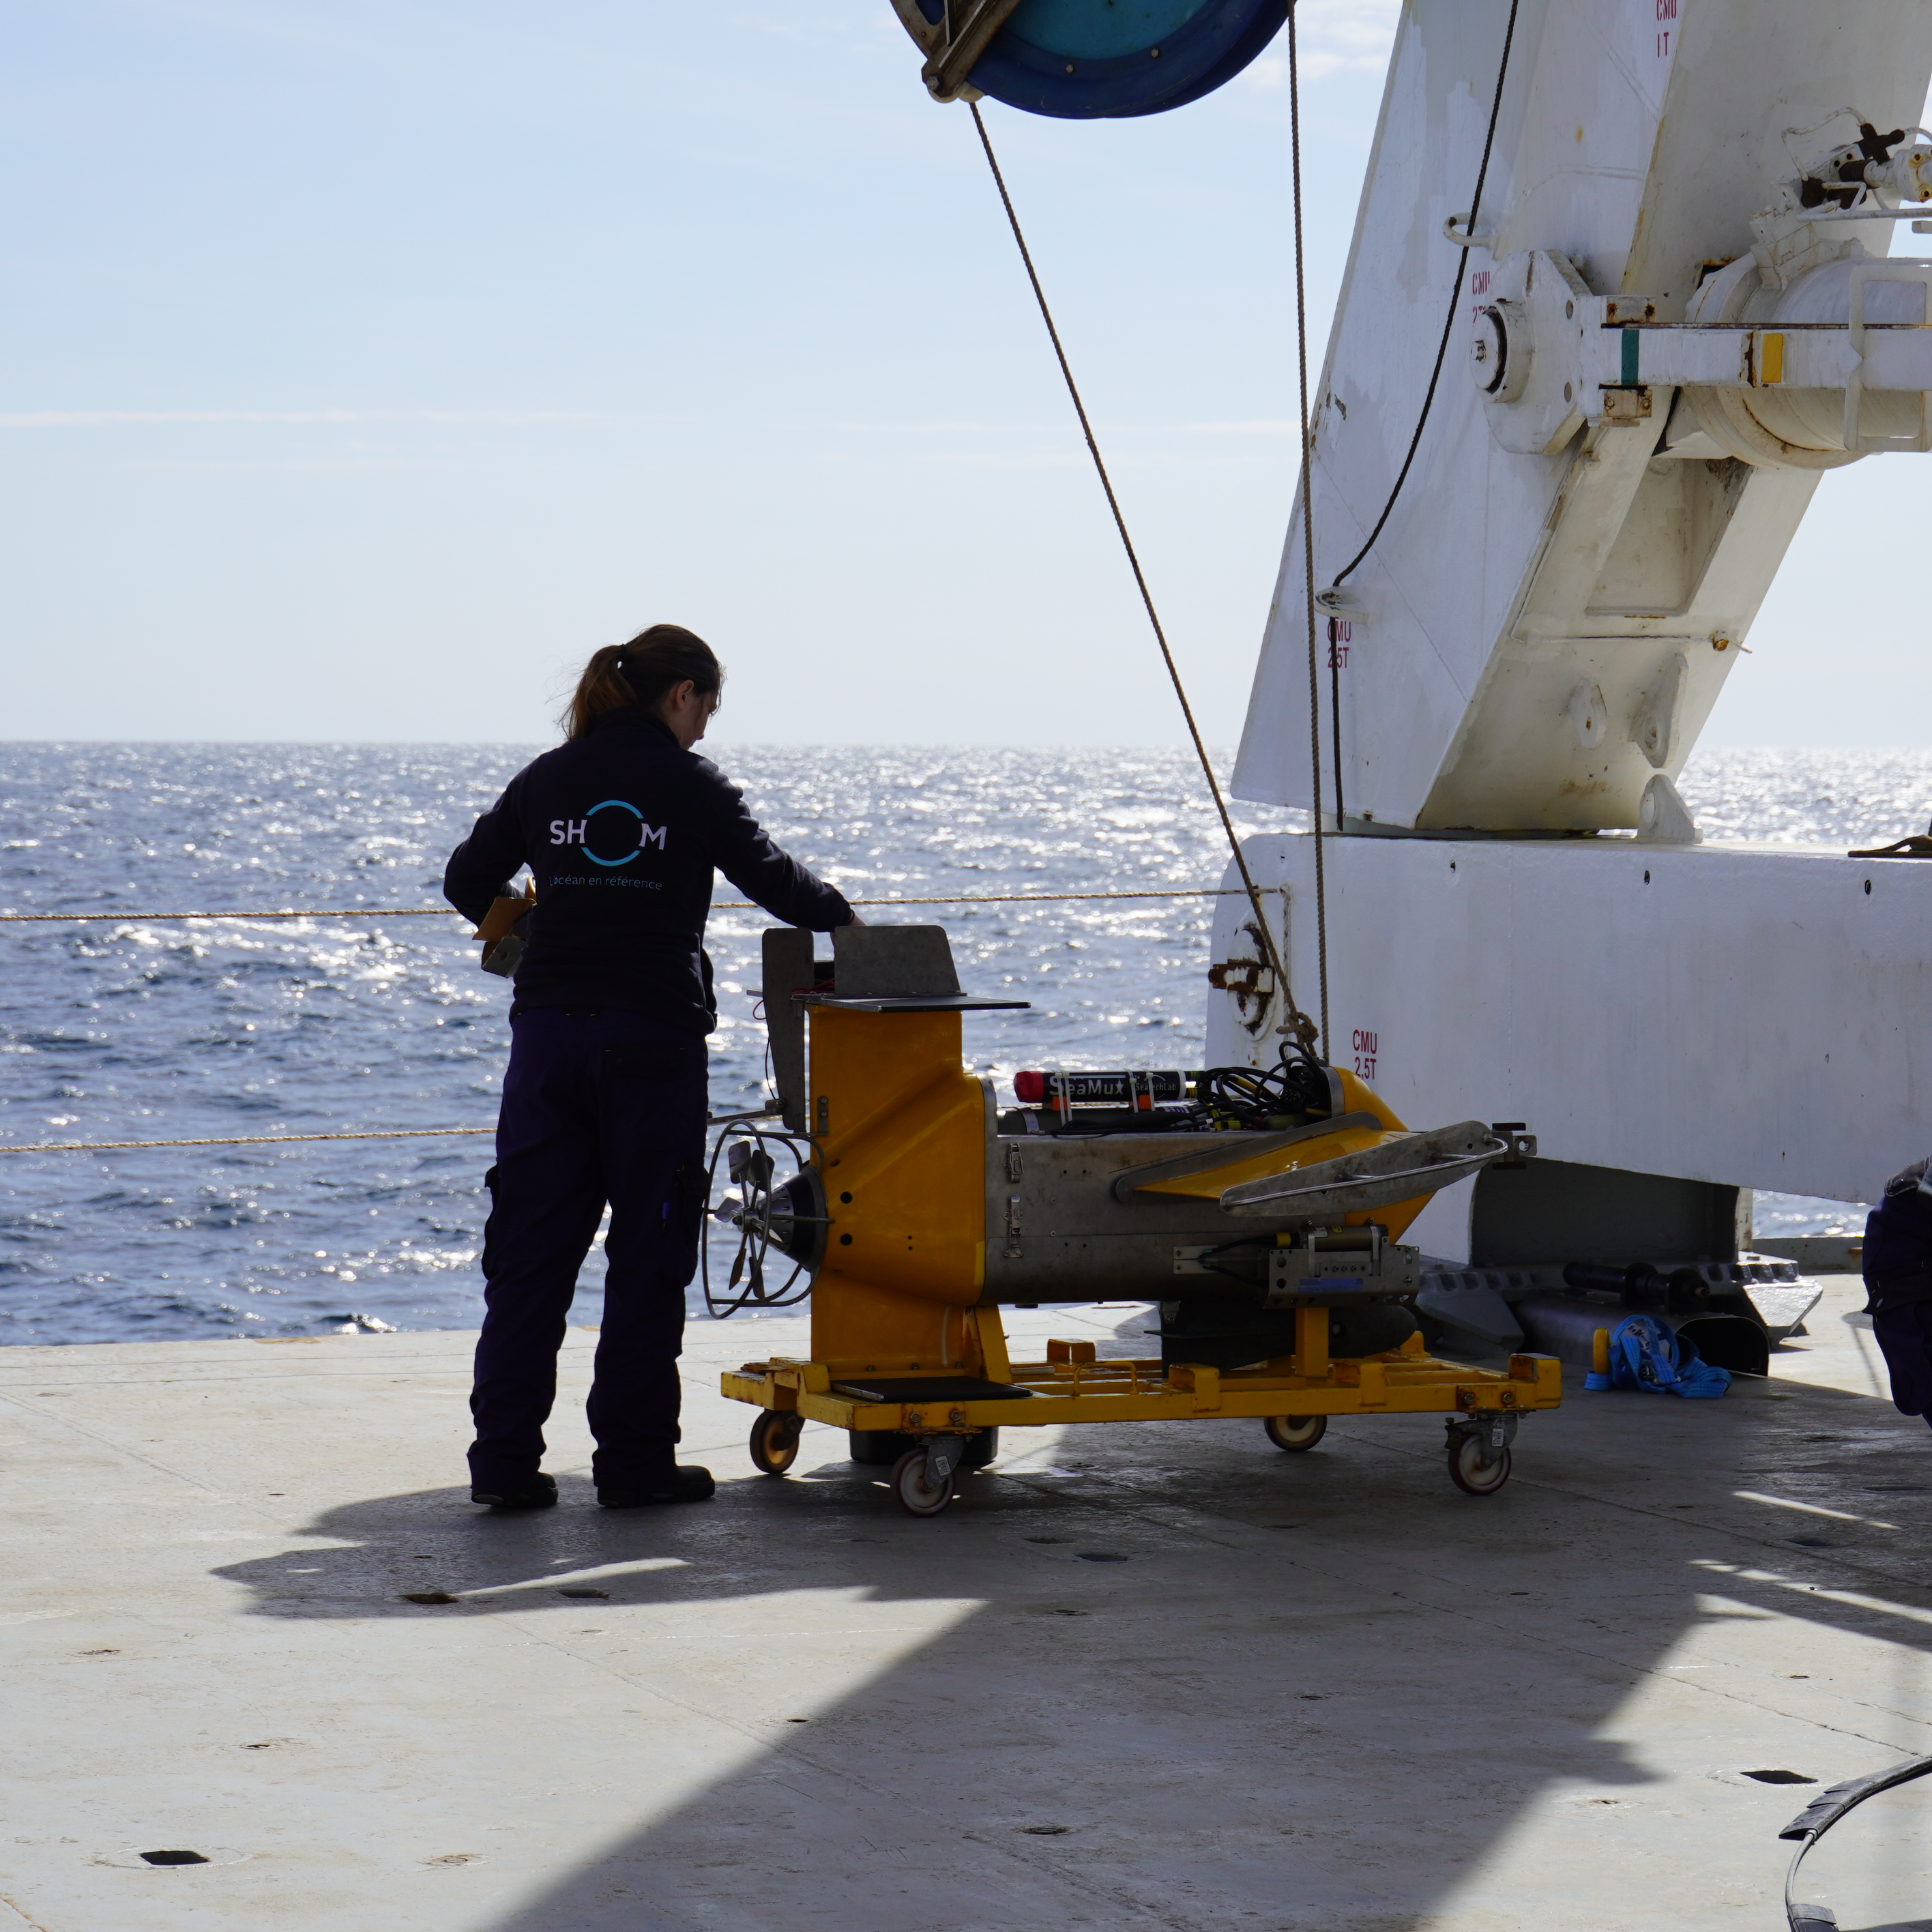 Equipe scientifique et technique sur la plage arrière de l'Atalante lors de la mise à l'eau du VMP500 destiné à mesurer les microstructures et évaluer les niveaux de turbulence - (c) Shom